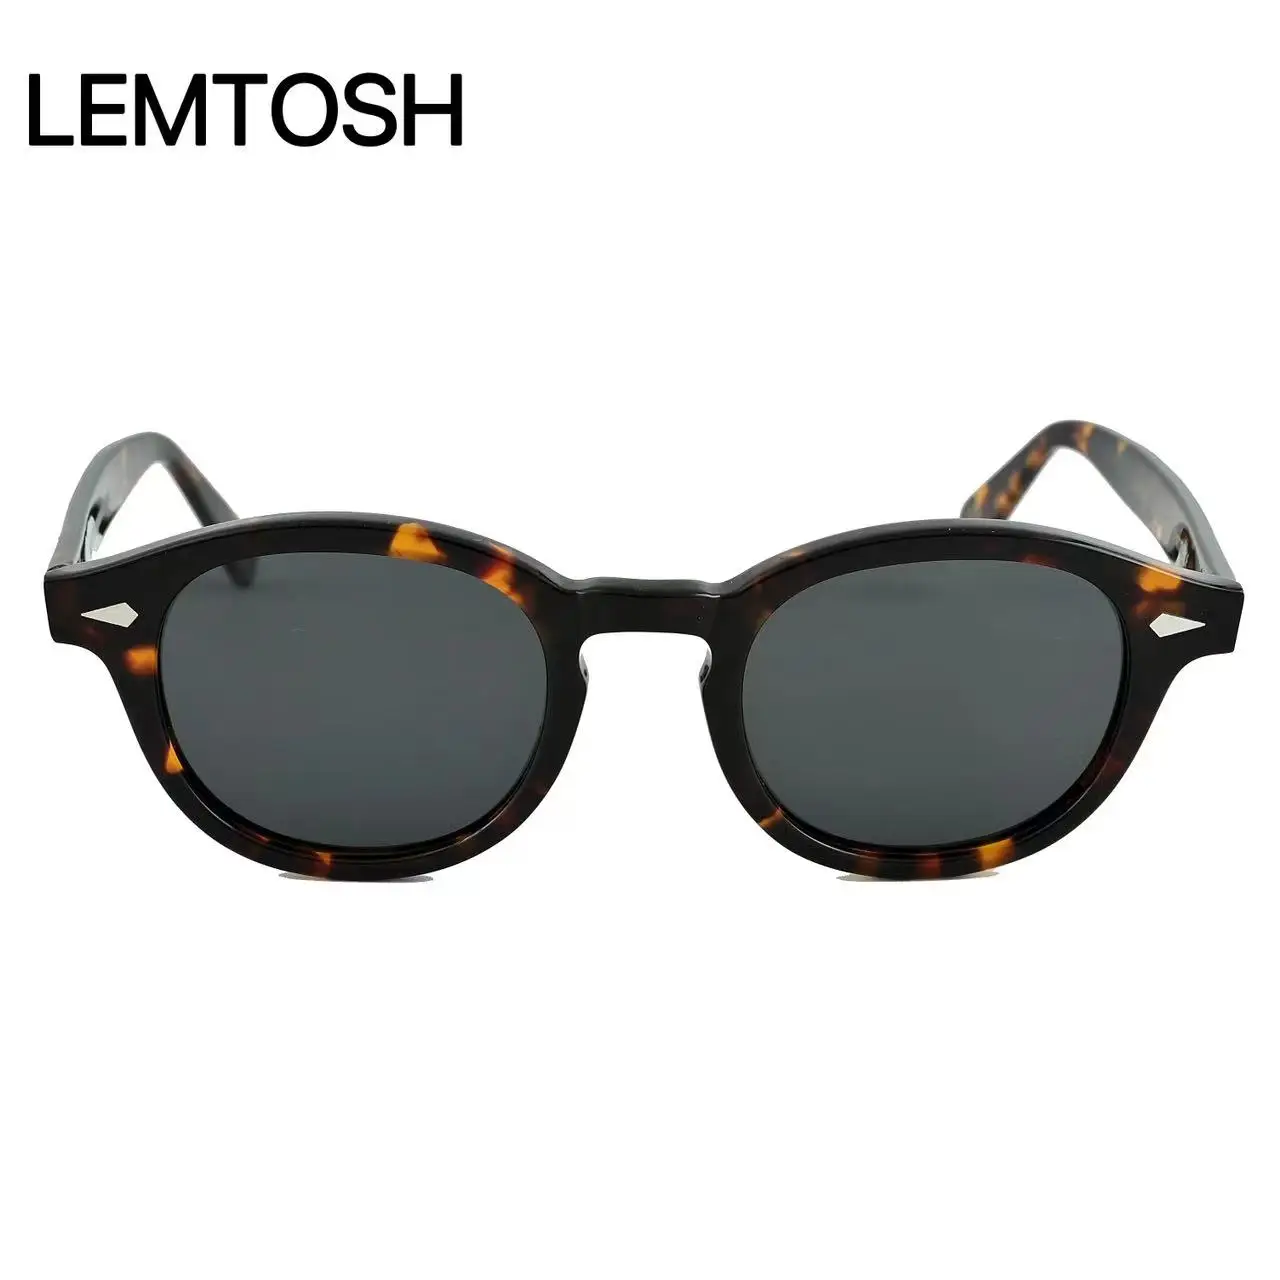 Yeni Varış MOSCOT LEMTOSH Model Johnny Depp Kaplumbağa Kabuğu Çerçeve Gri Lens Unisex Güneş Gözlüğü Moda Trendi Erkek Kadın Gözlük